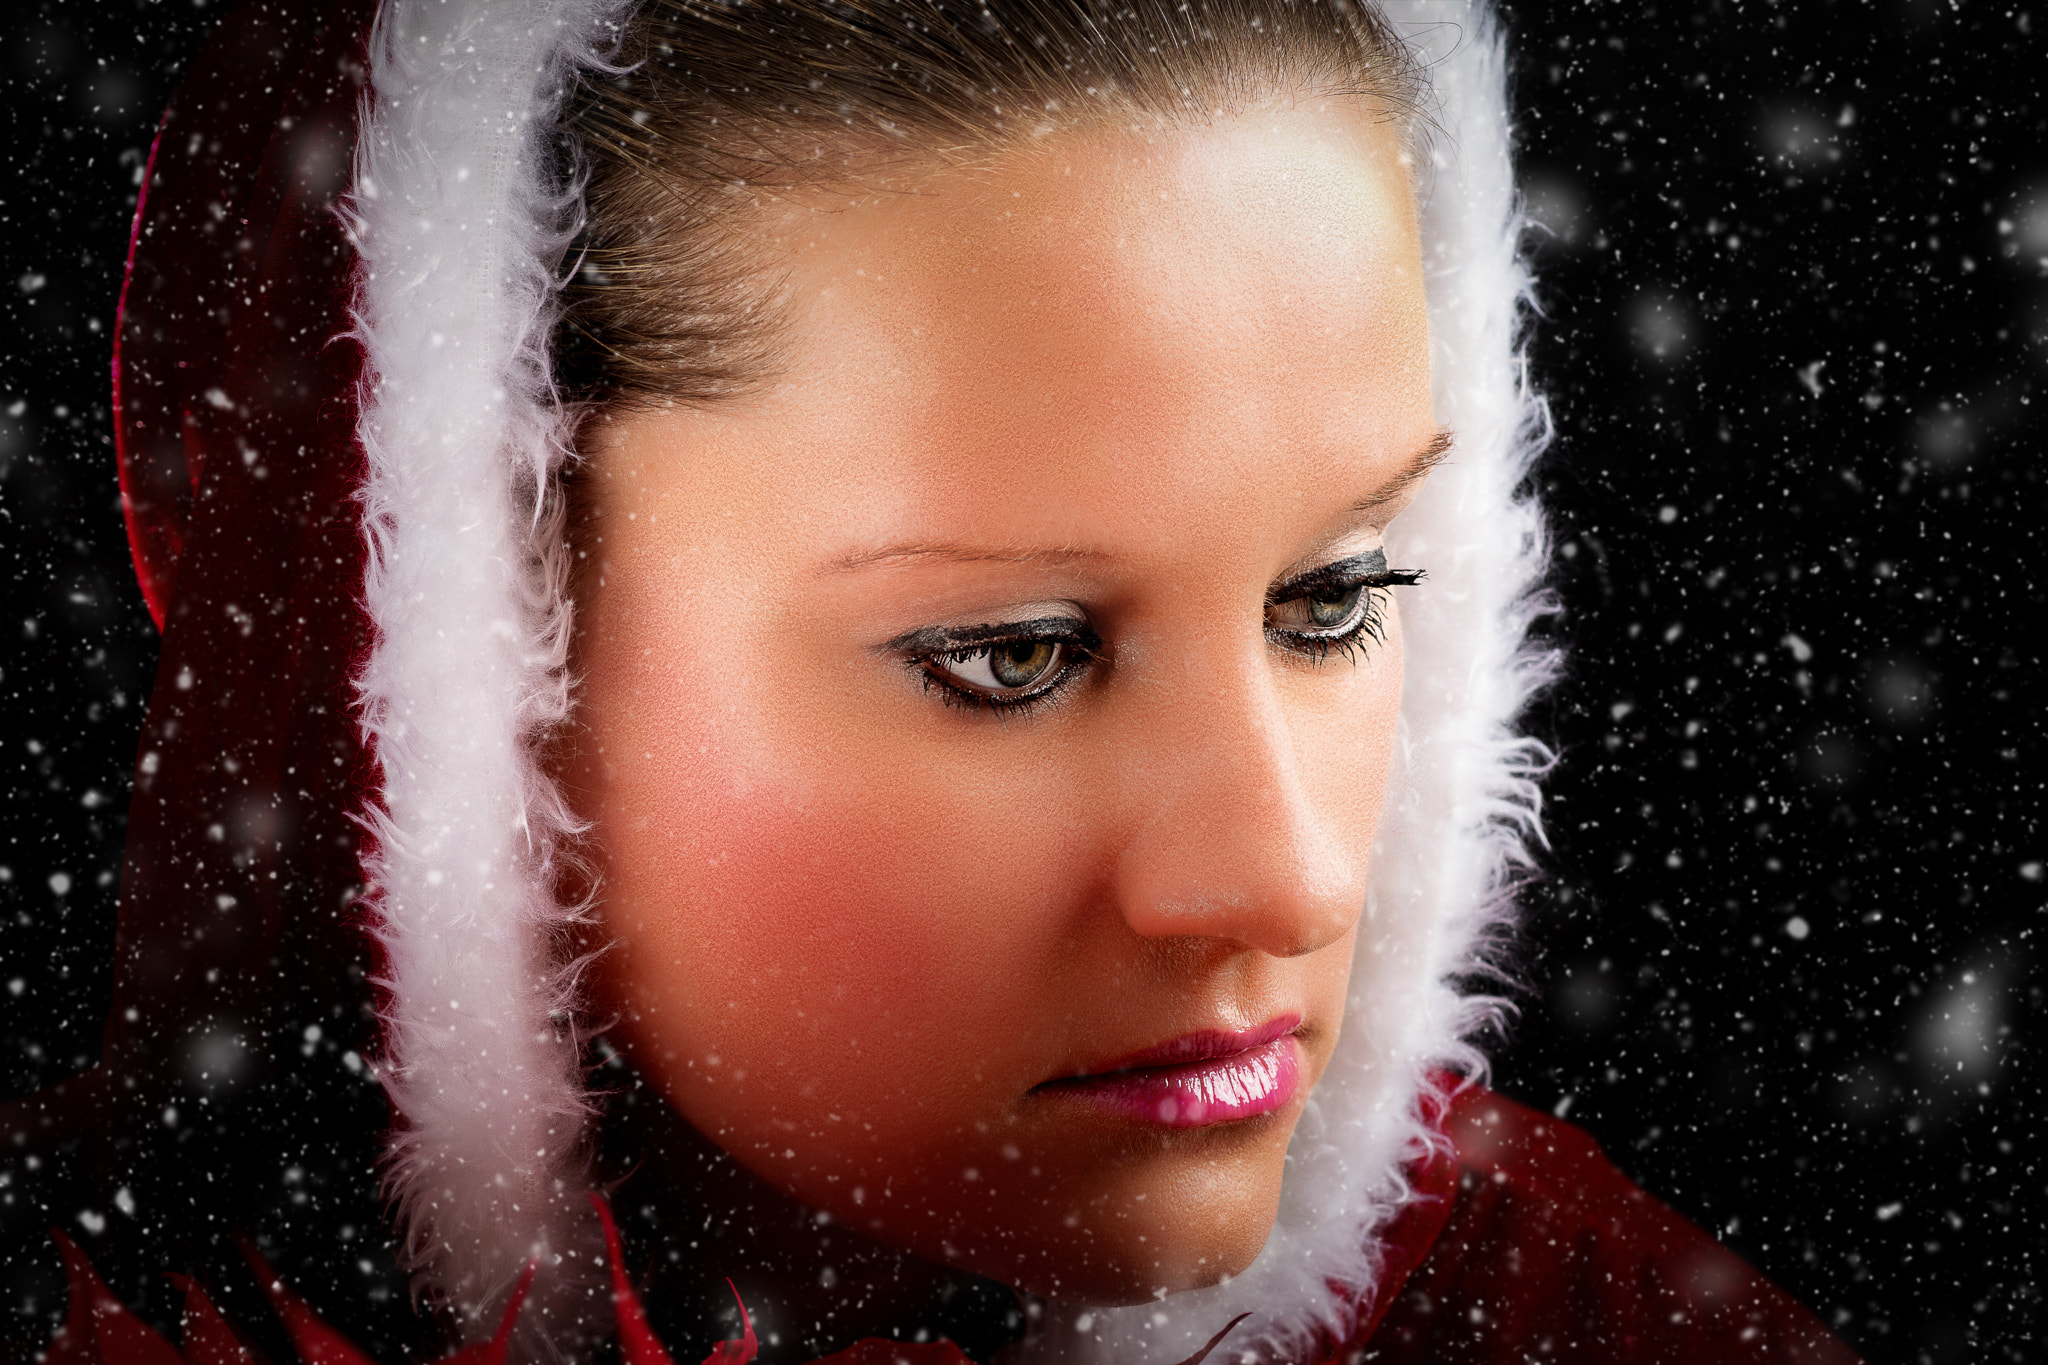 Nikon D500 sample photo. My snow queen photography